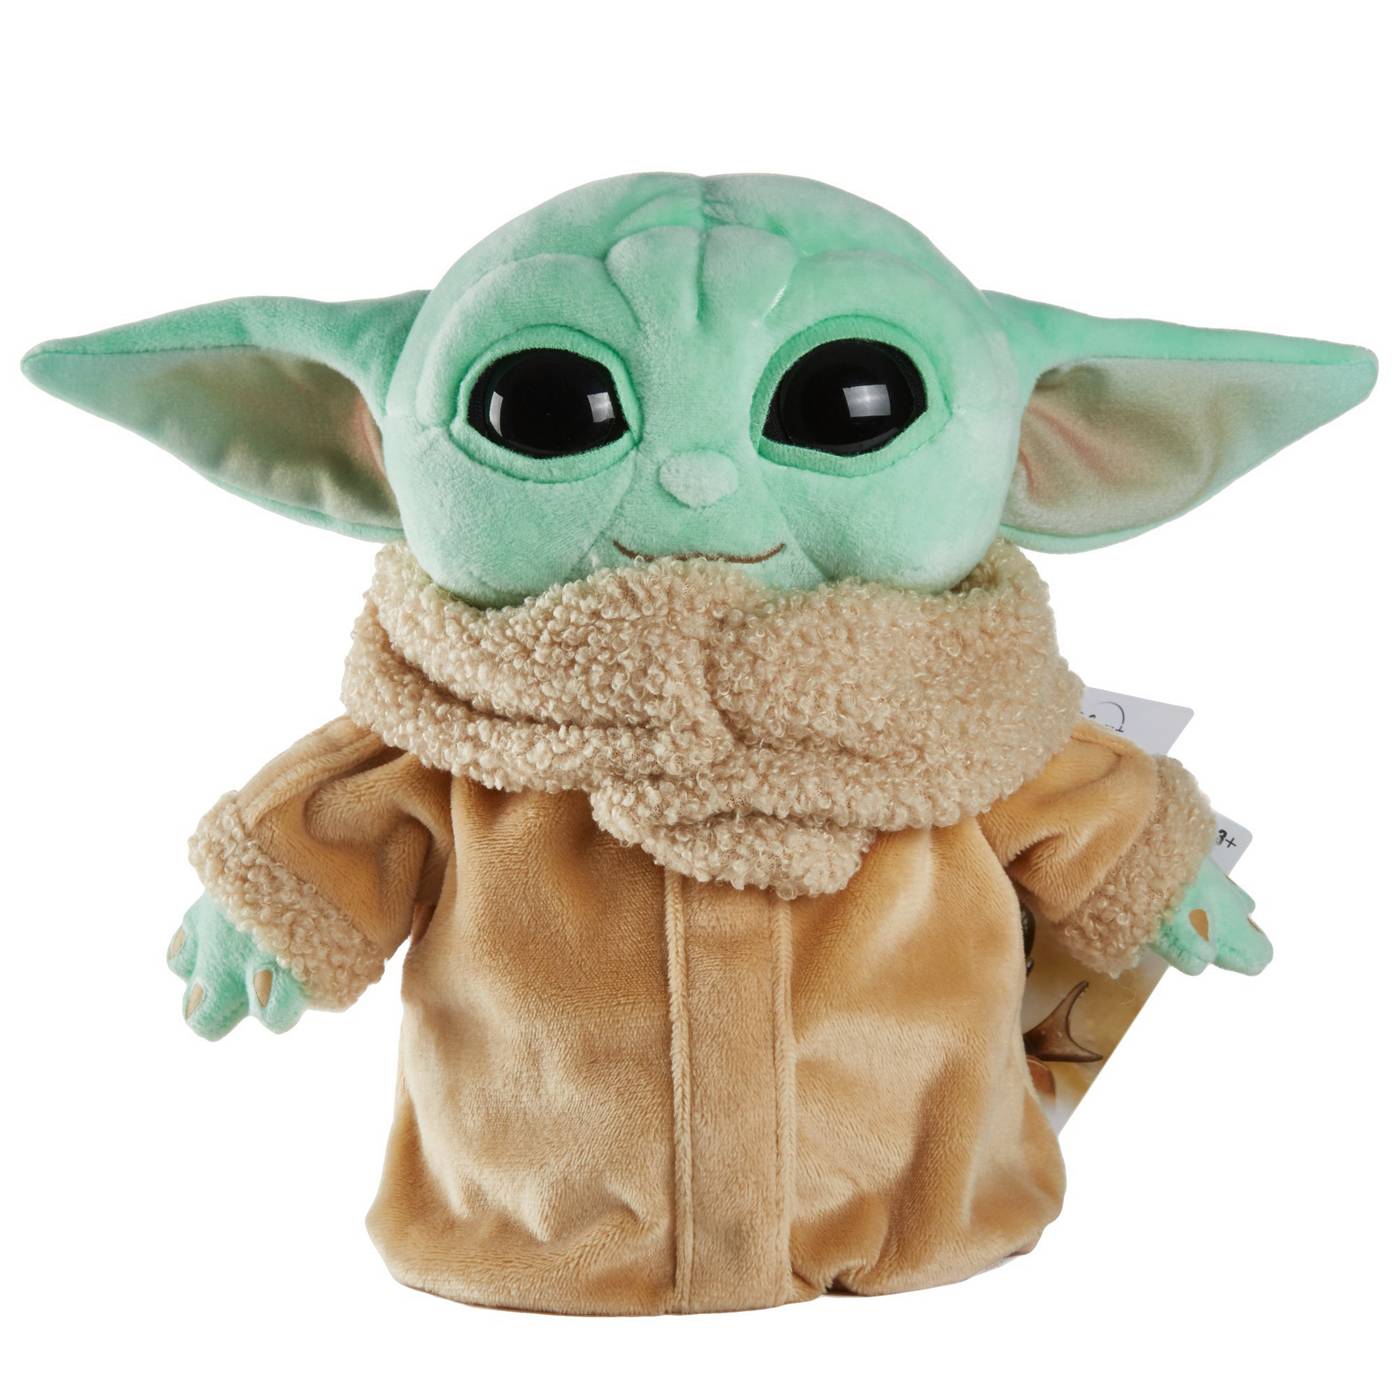 Disney's Star Wars The Mandalorian Grogu Plush Toy - Shop Plush Toys at  H-E-B